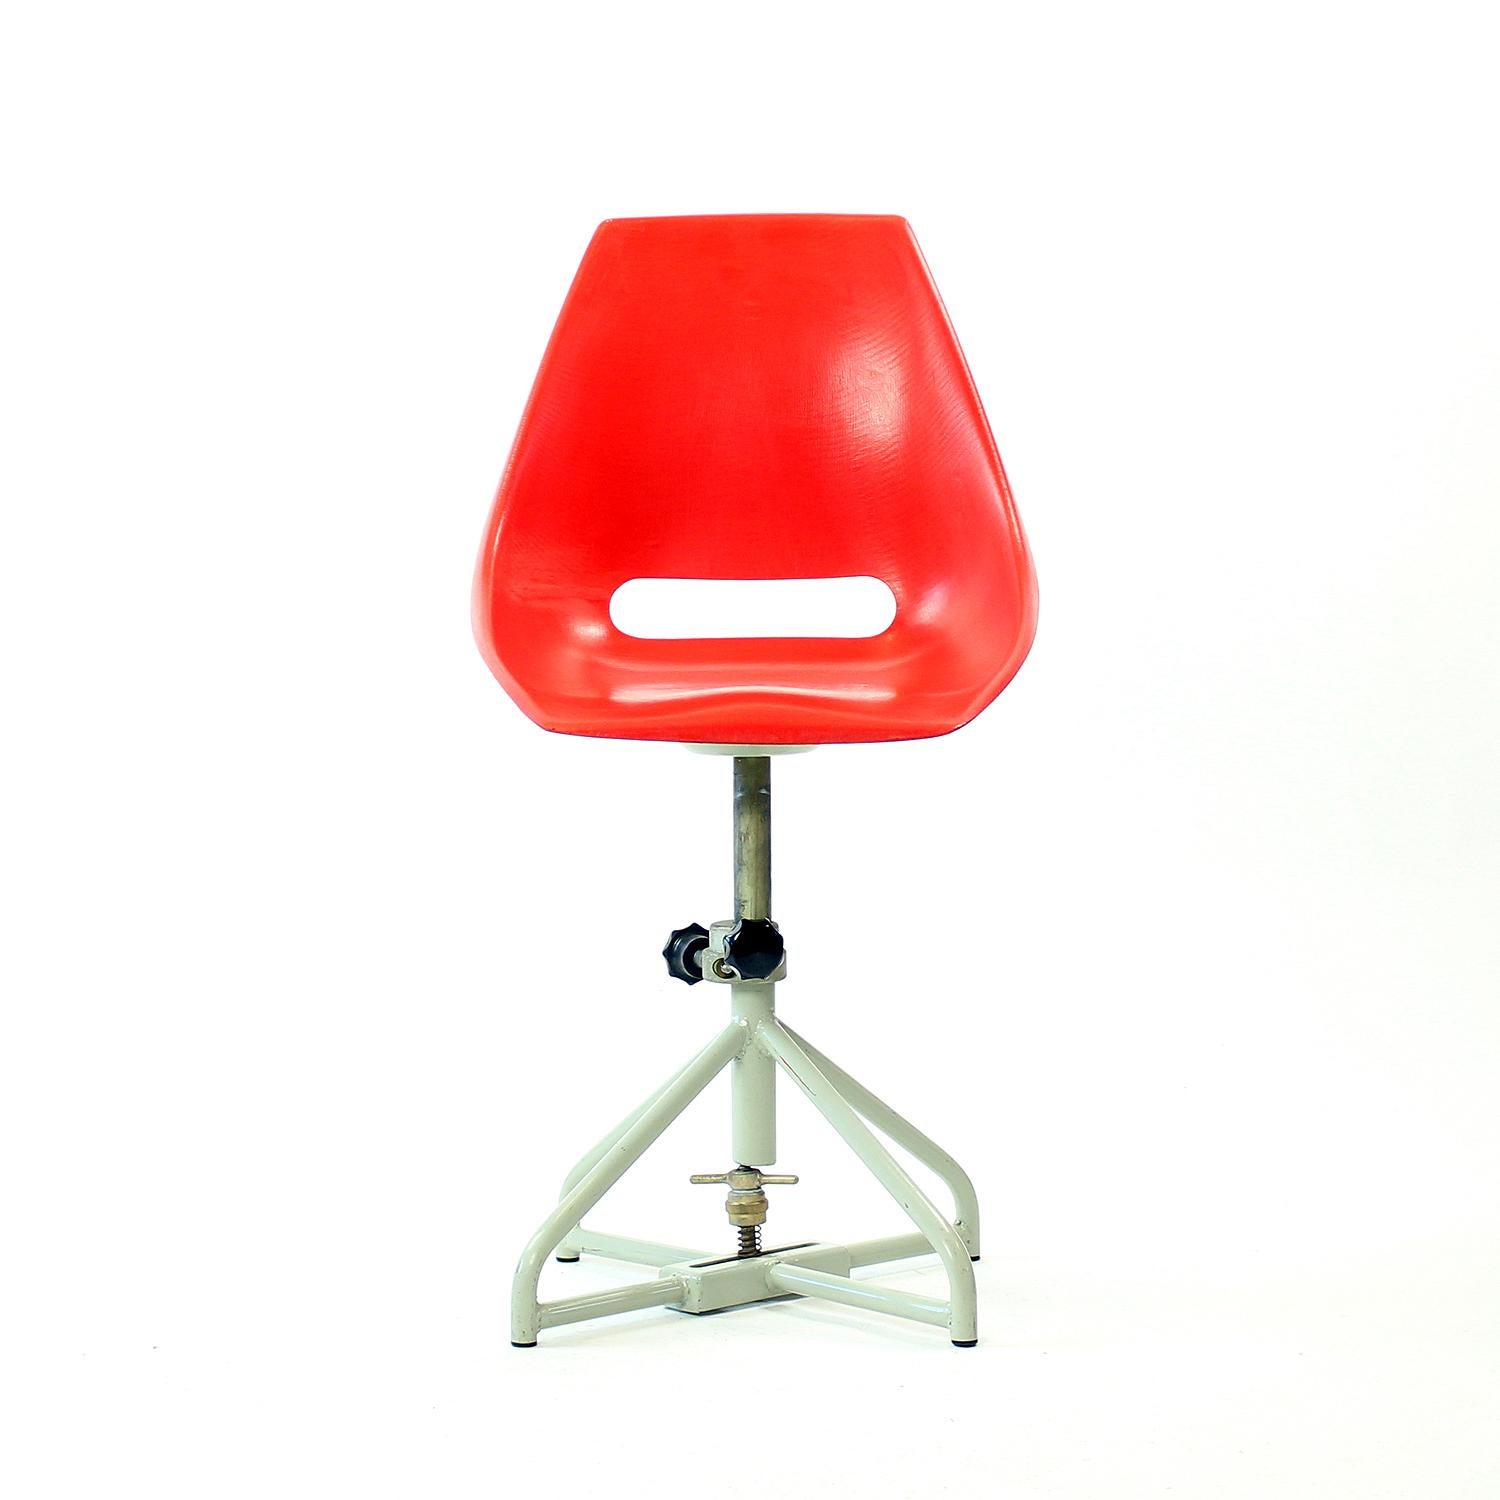 Superbe chaise industrielle datant du milieu du siècle en Tchécoslovaquie. Conçu par Miroslav Navratil pour la société Vertext dans les années 1960. Certains fauteuils portent encore l'étiquette originale de Vertex. Les chaises étaient à l'origine